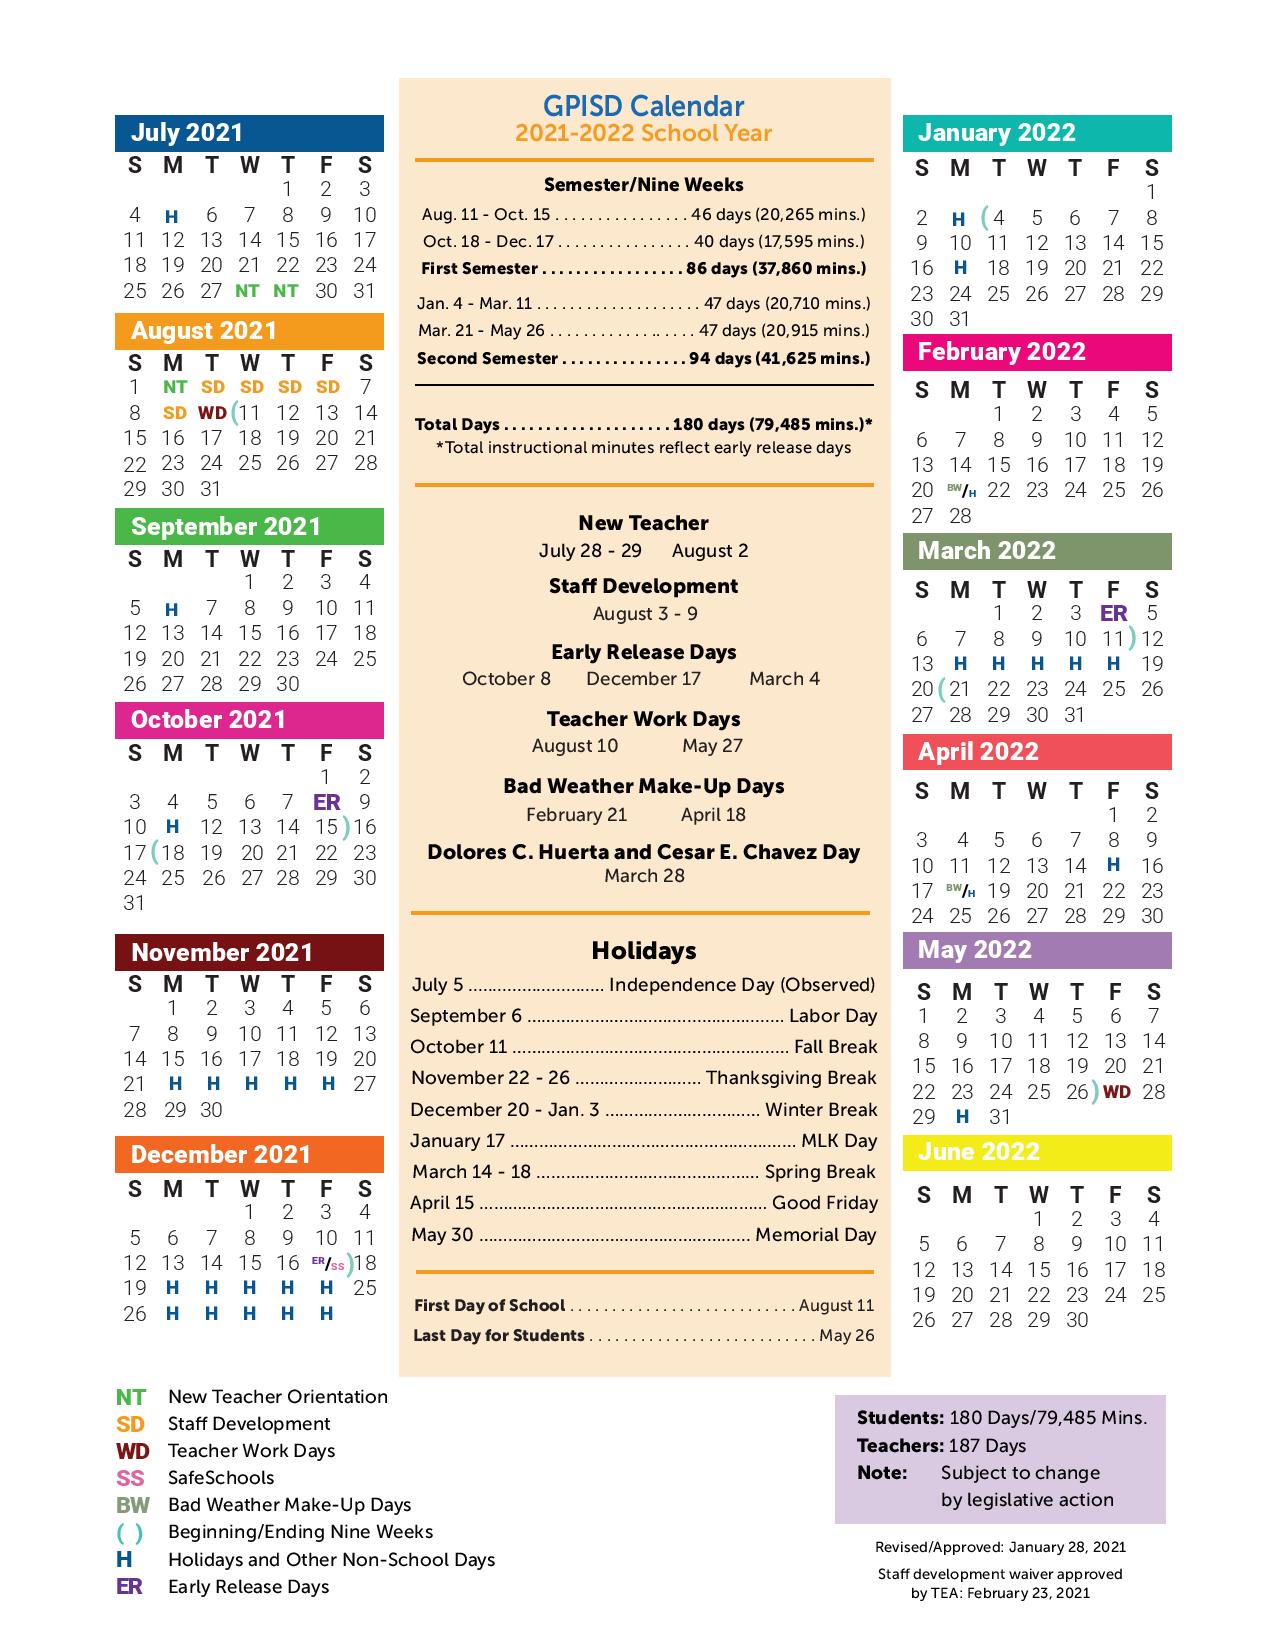 Disd Calendar 2022 Grand Prairie Independent School District Calendar 2021-2022